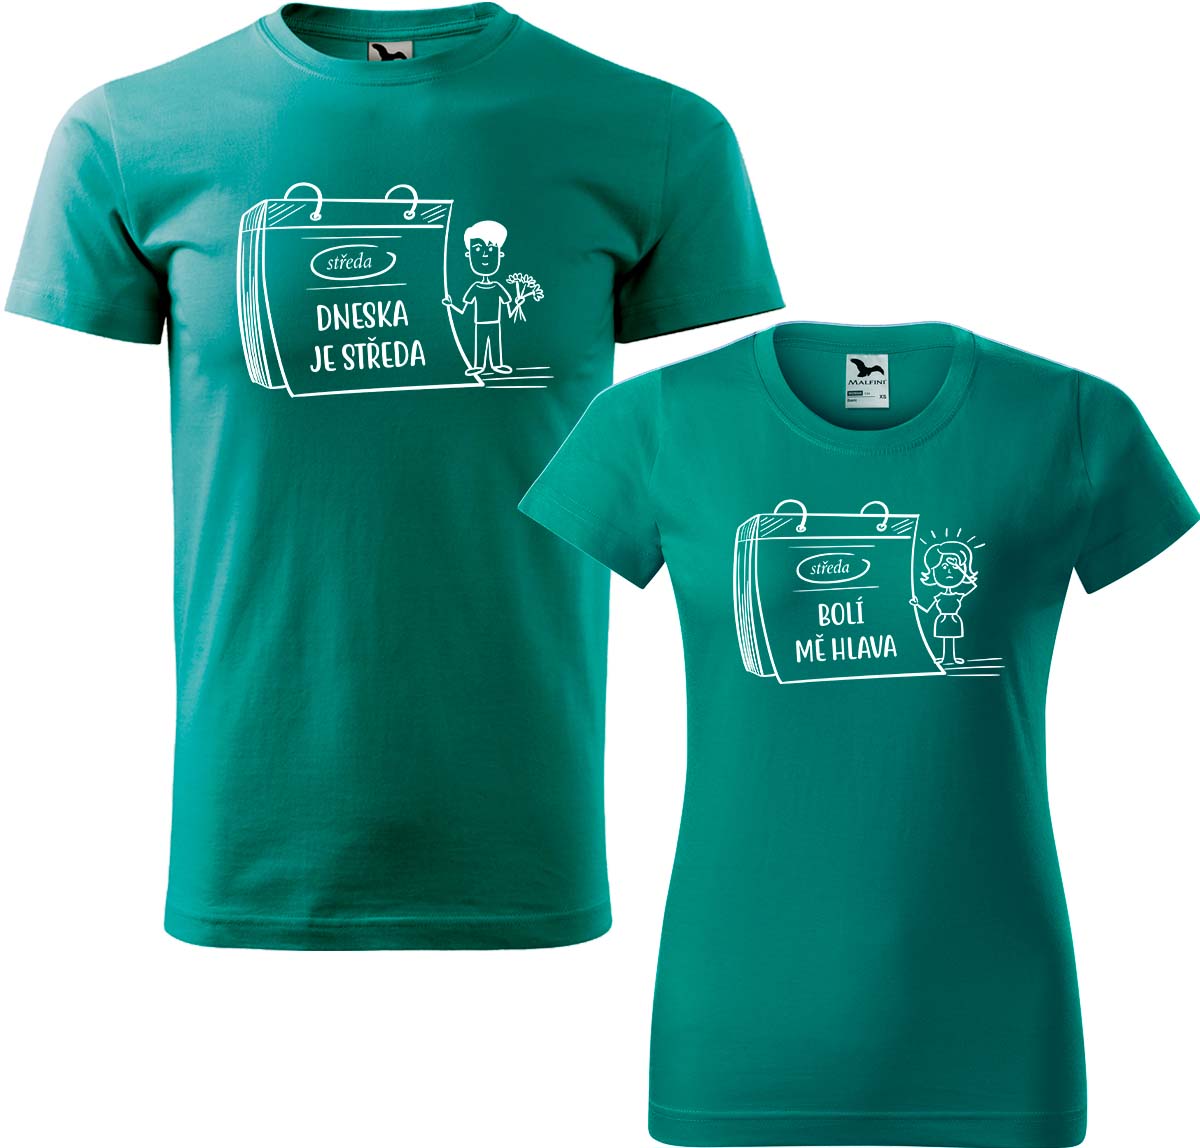 Trička pro páry - Dneska je středa Barva: Emerald (19), Velikost dámské tričko: S, Velikost pánské tričko: L